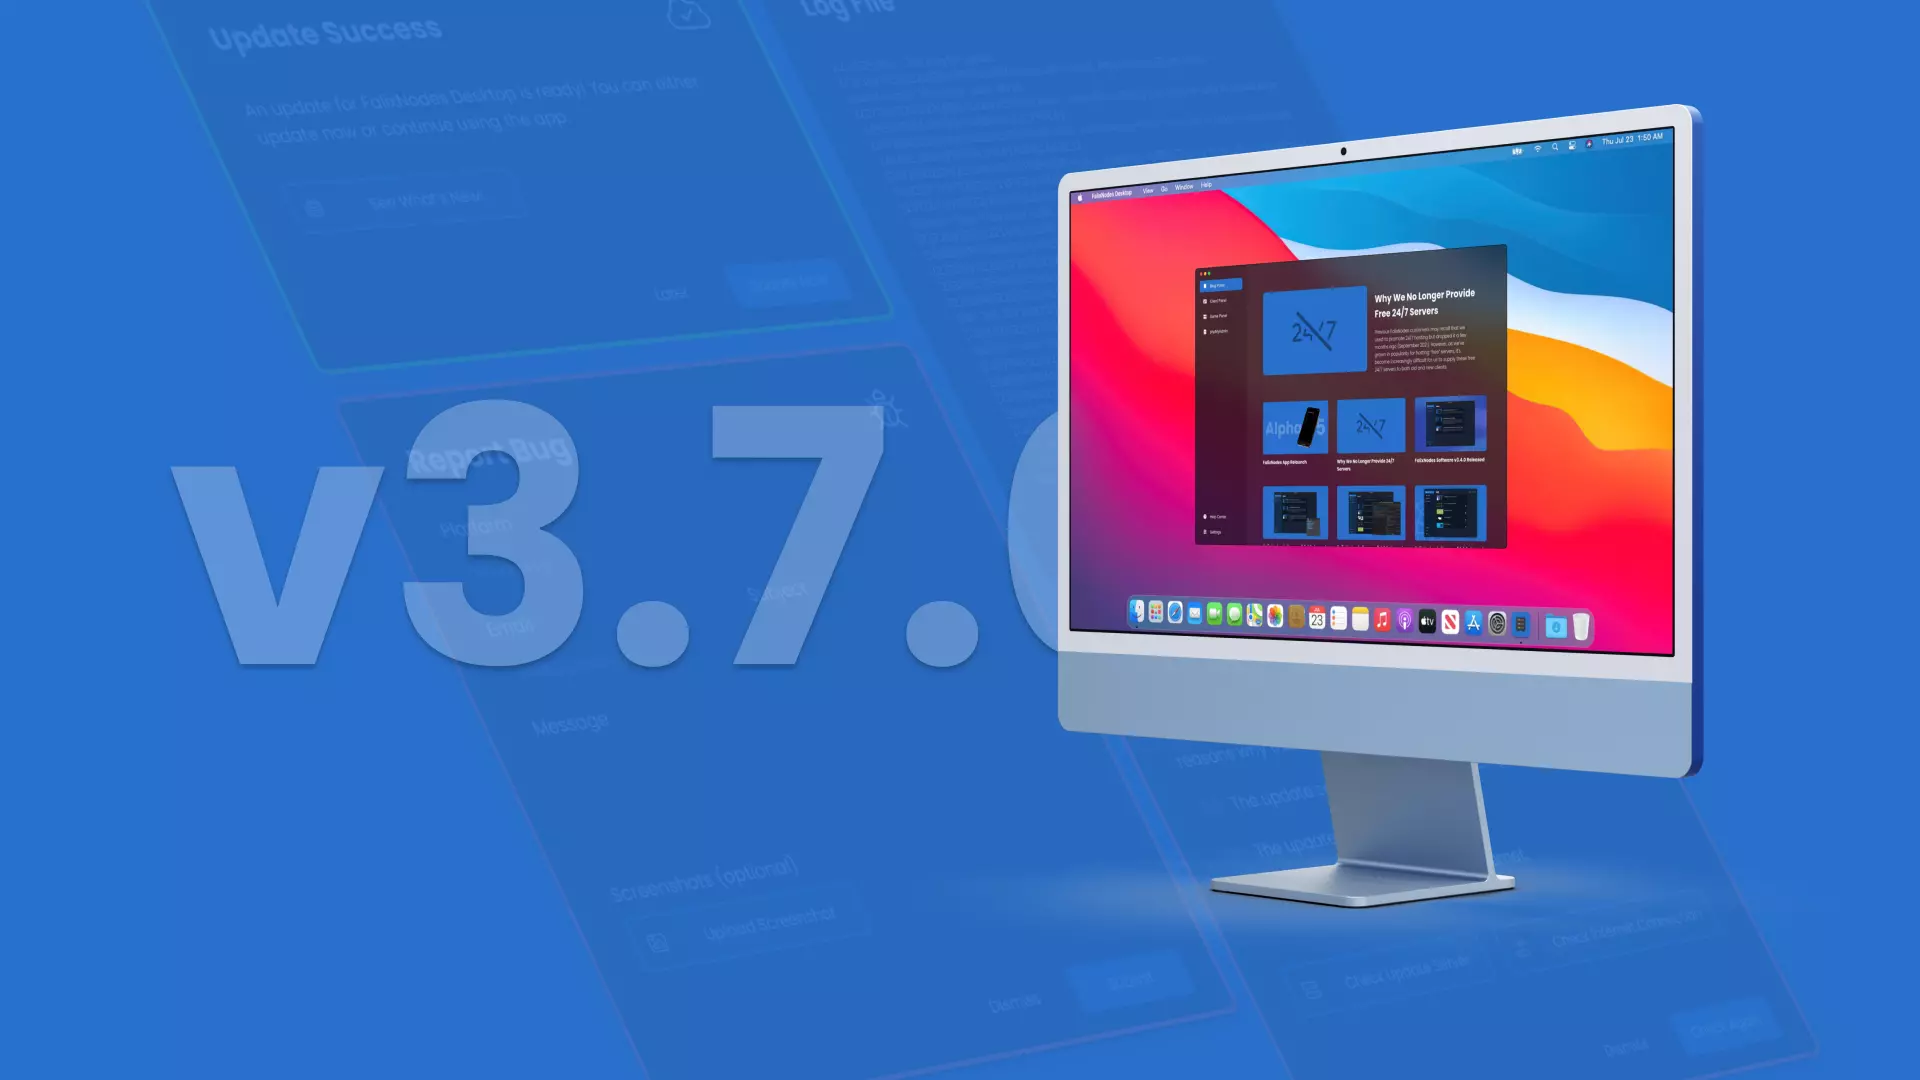 FalixNodes Desktop v3.7.0 Released